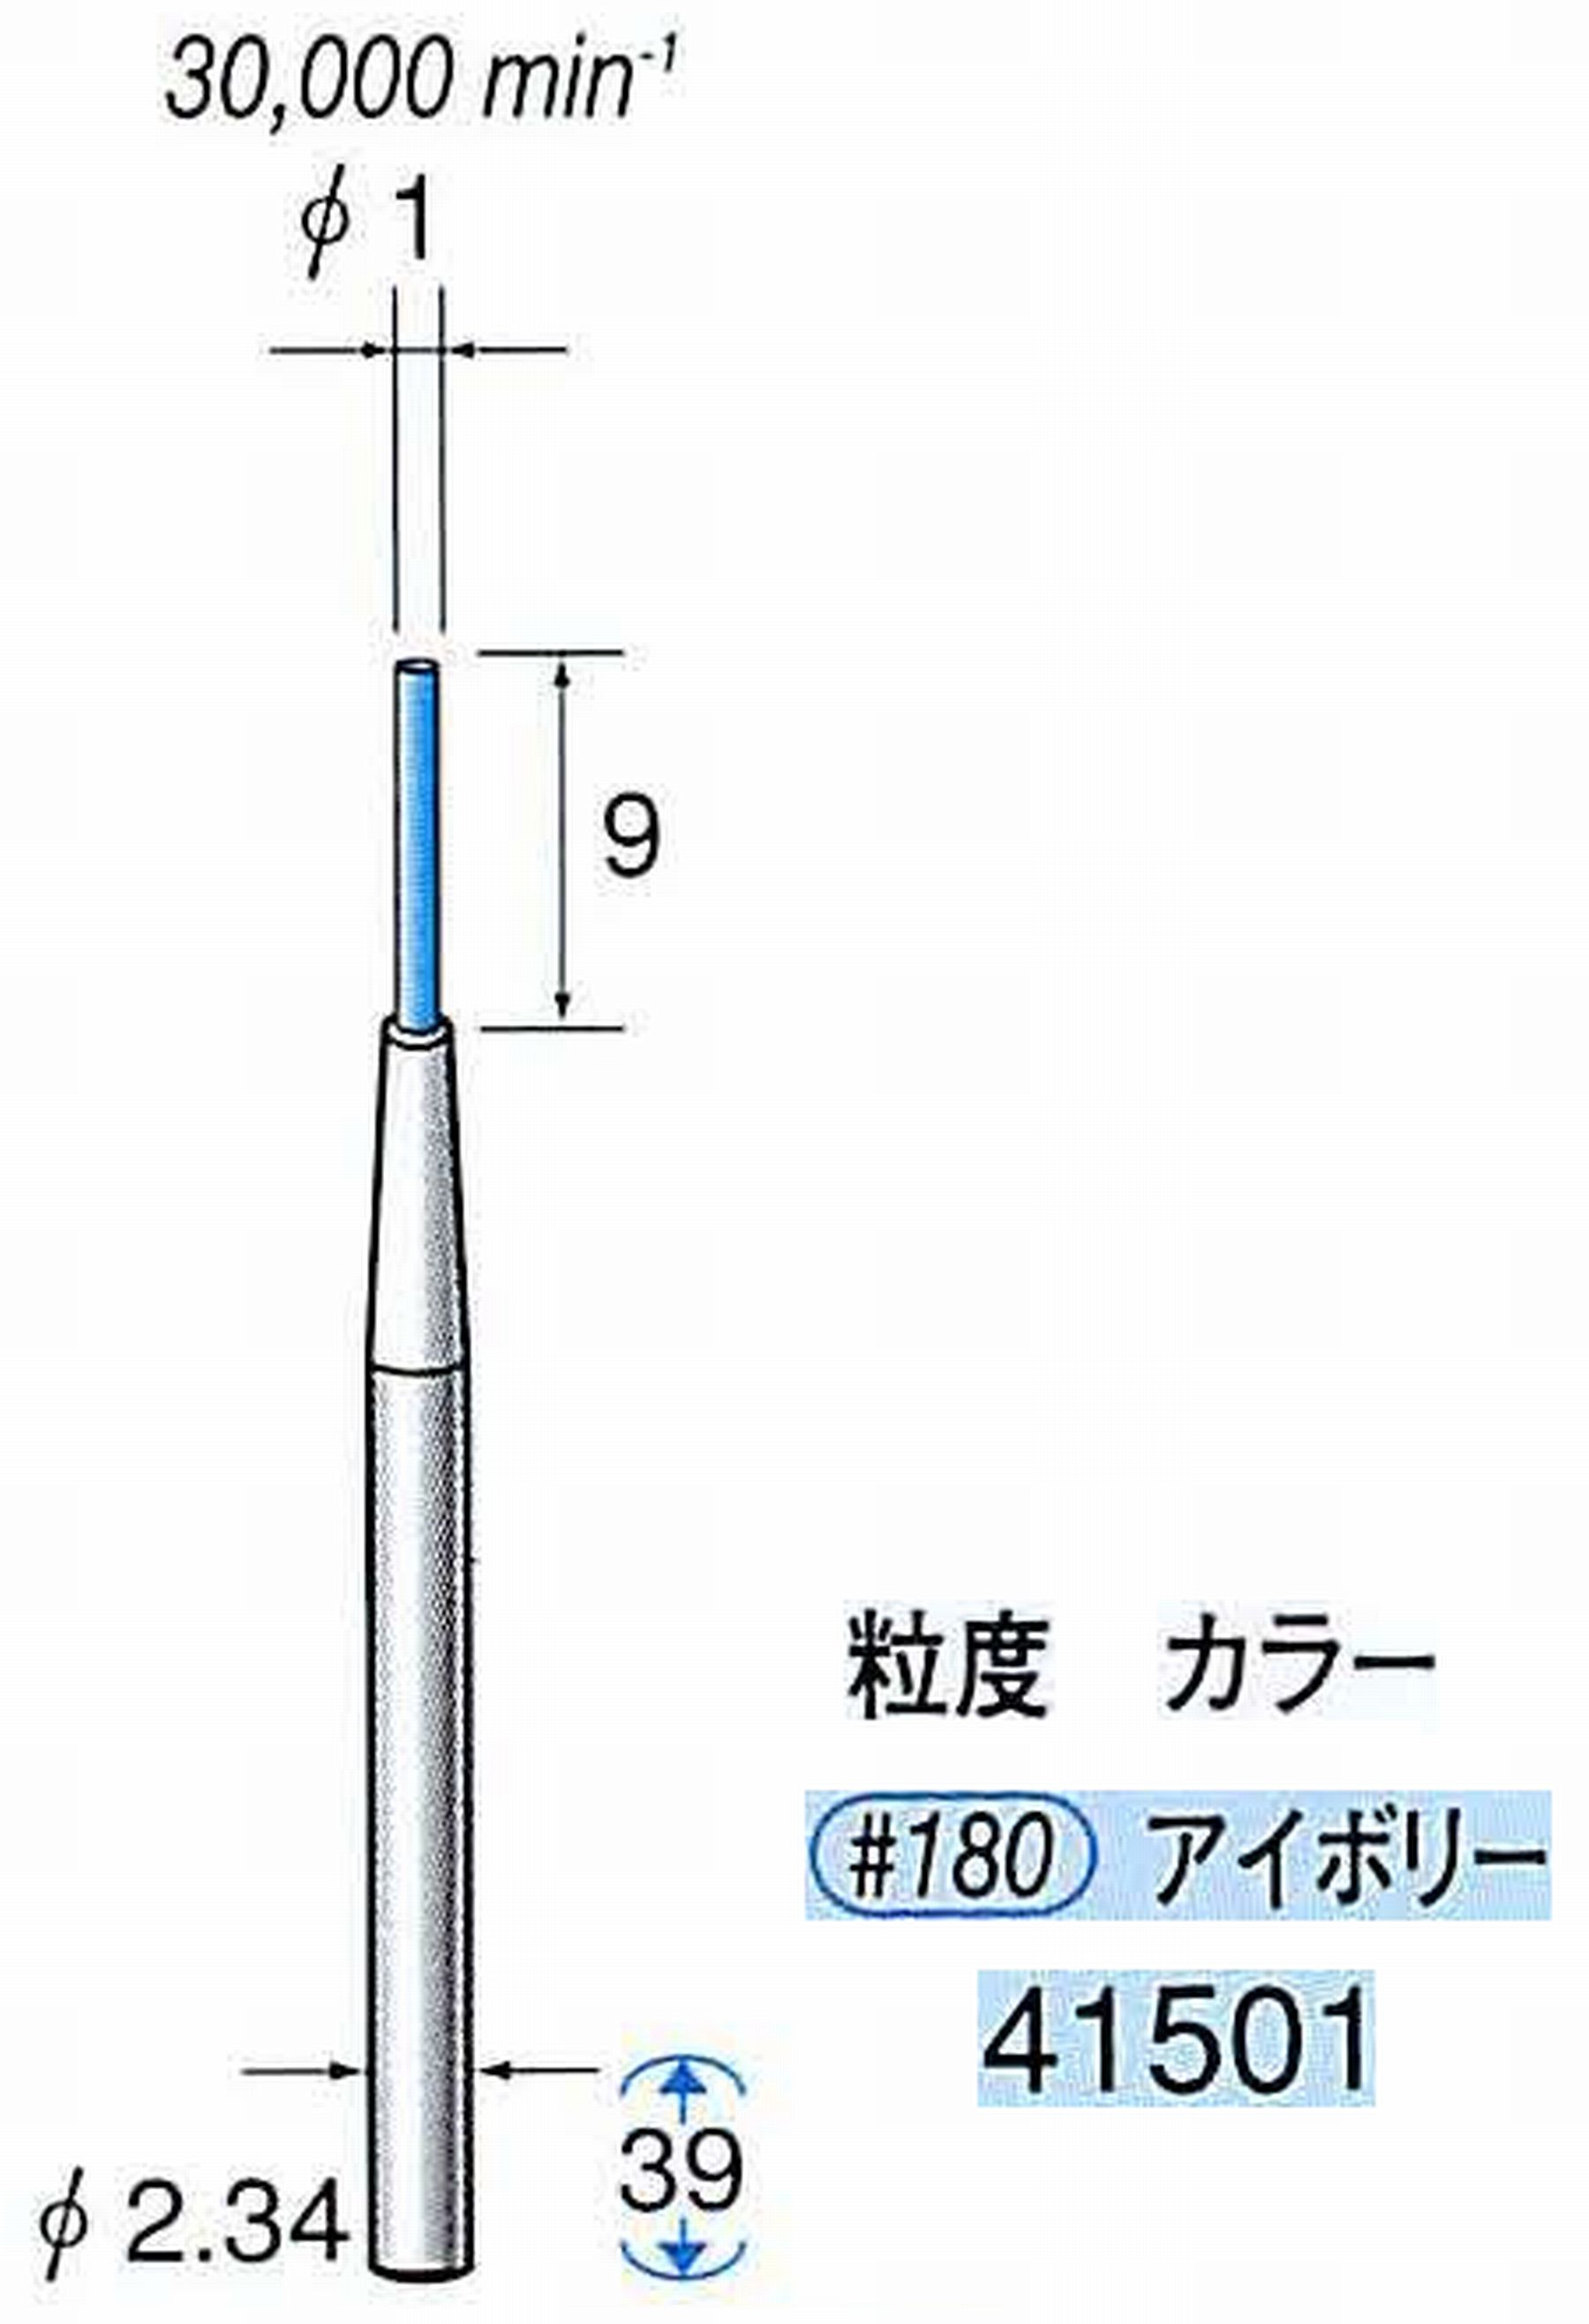 ナカニシ/NAKANISHI セラファイバー精密軸付砥石(カラー アイボリー) 軸径(シャンク) φ2.34mm 41501